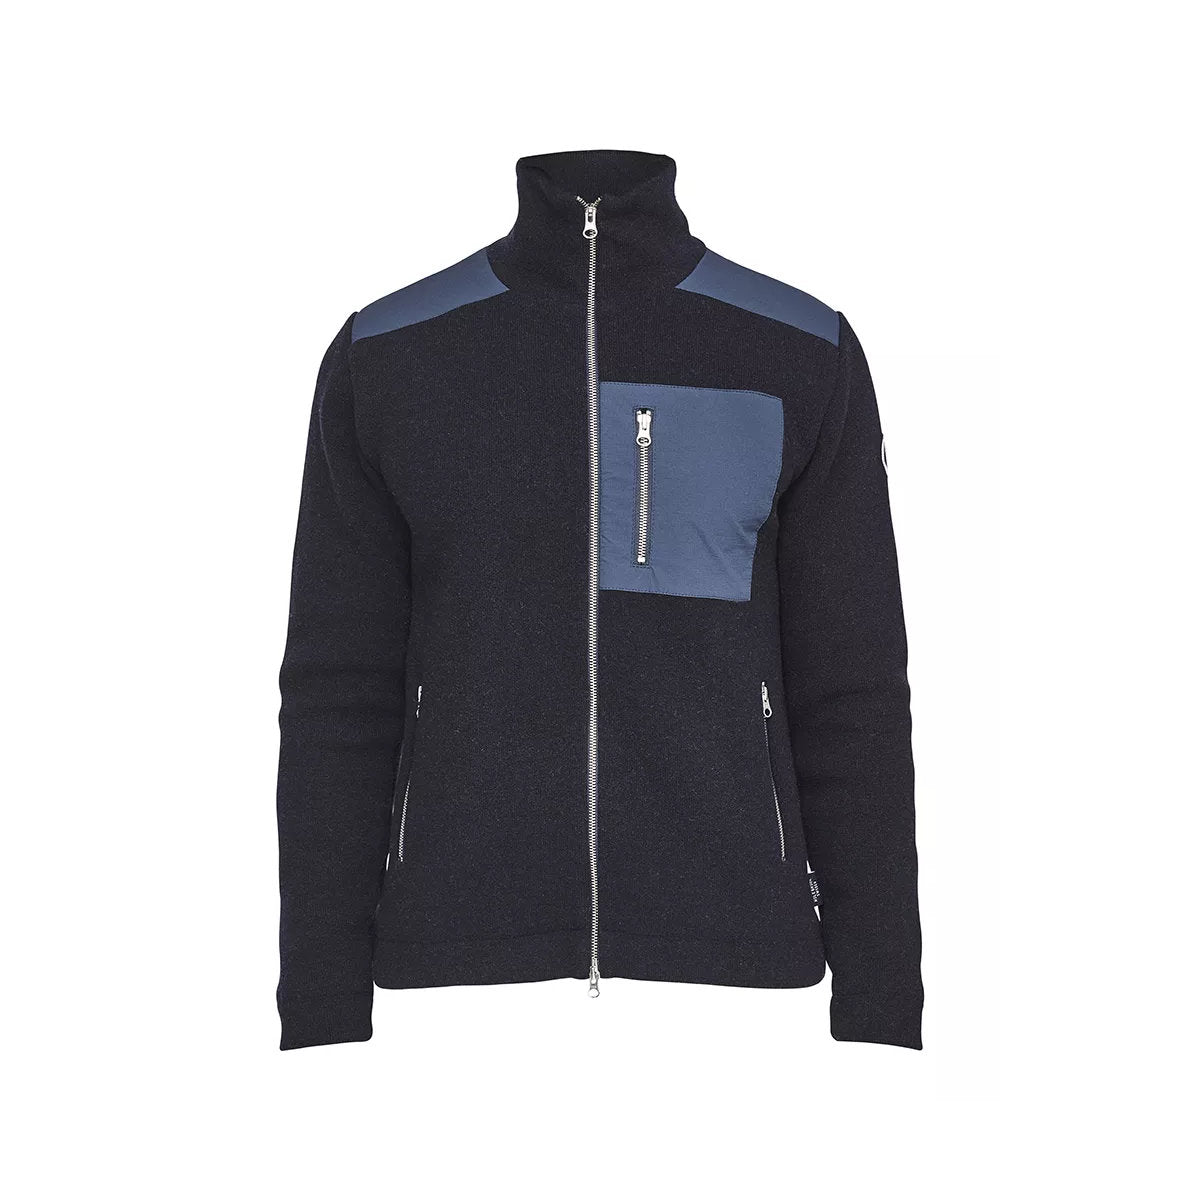 Holebrook Wilhelm Full-Zip Windproof Jacket - Navy - 4 - Tops - Zip Sweaters